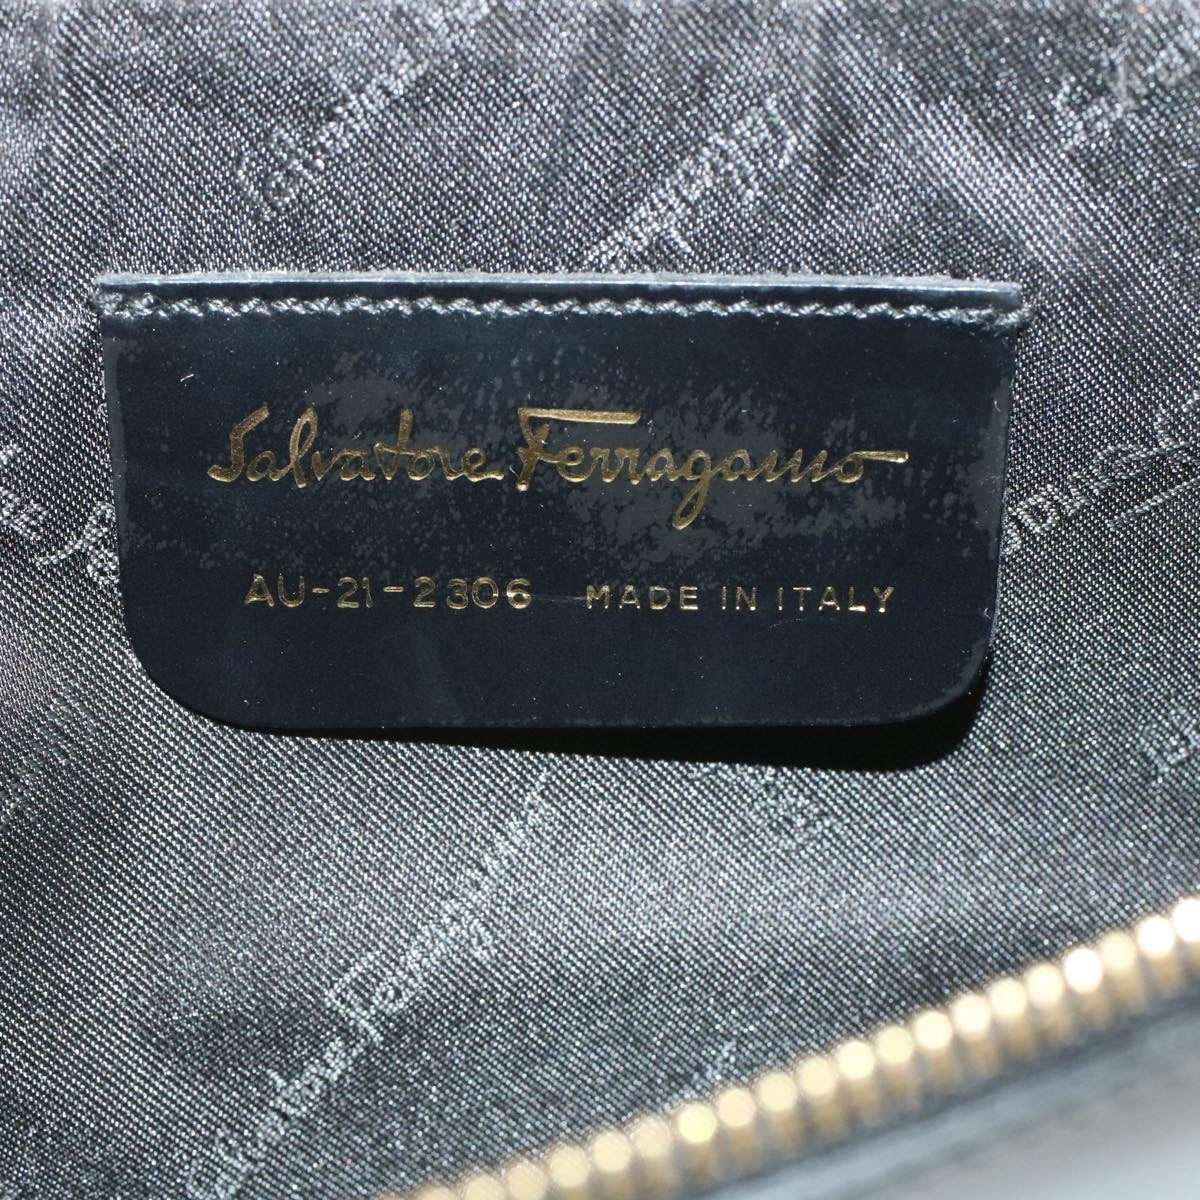 Salvatore Ferragamo Gancini Pouch Leather Black Auth rd1019